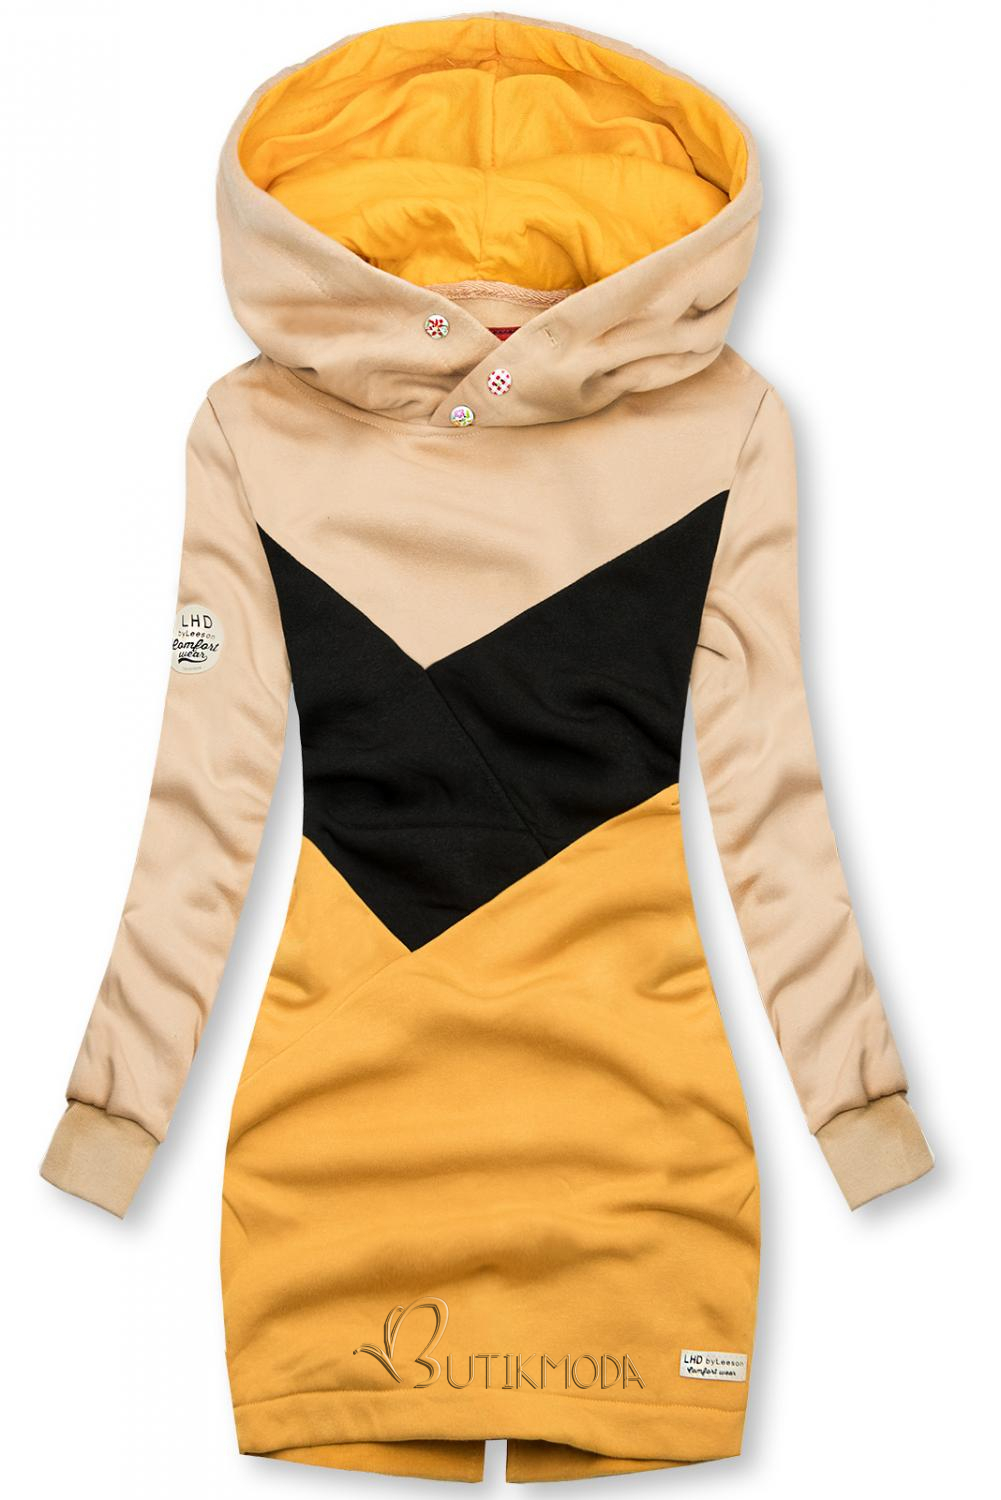 Verlängerte Sweatshirt mit Kapuze beige/schwarz/gelb